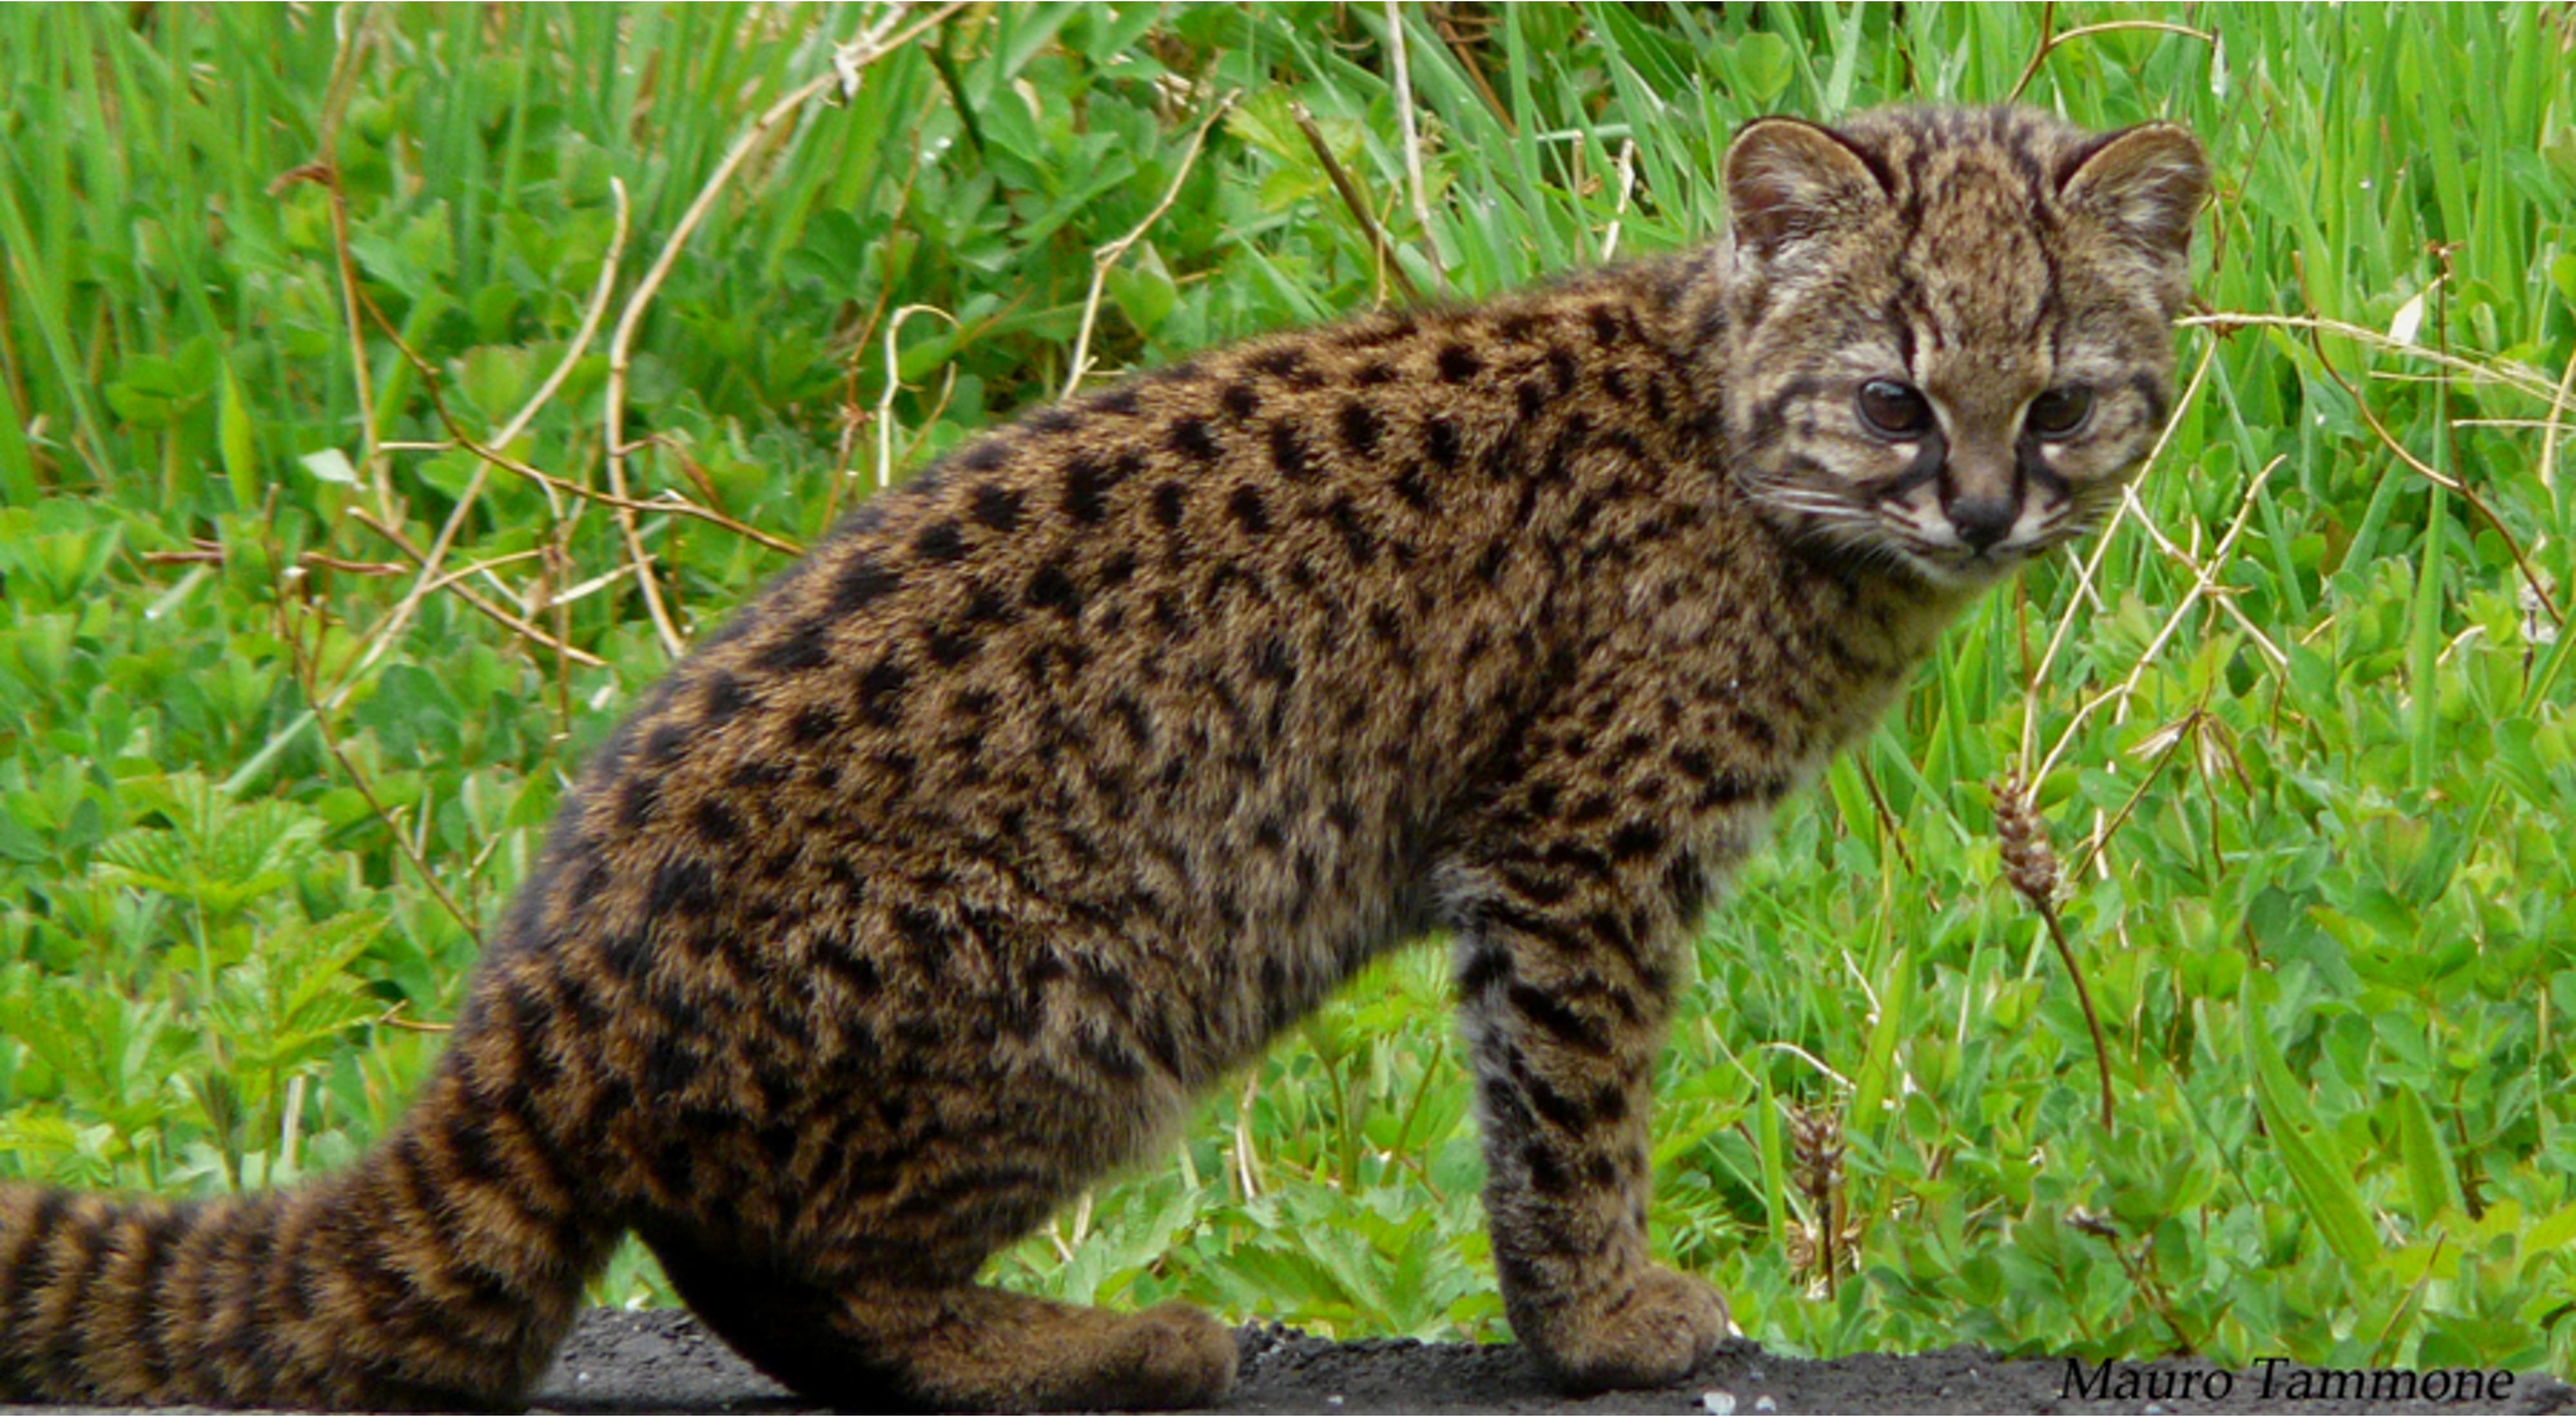 Leopardus guigna es una especie nativa del sur de Sudamérica y una especie amenazada por la destrucción de su hábitat.